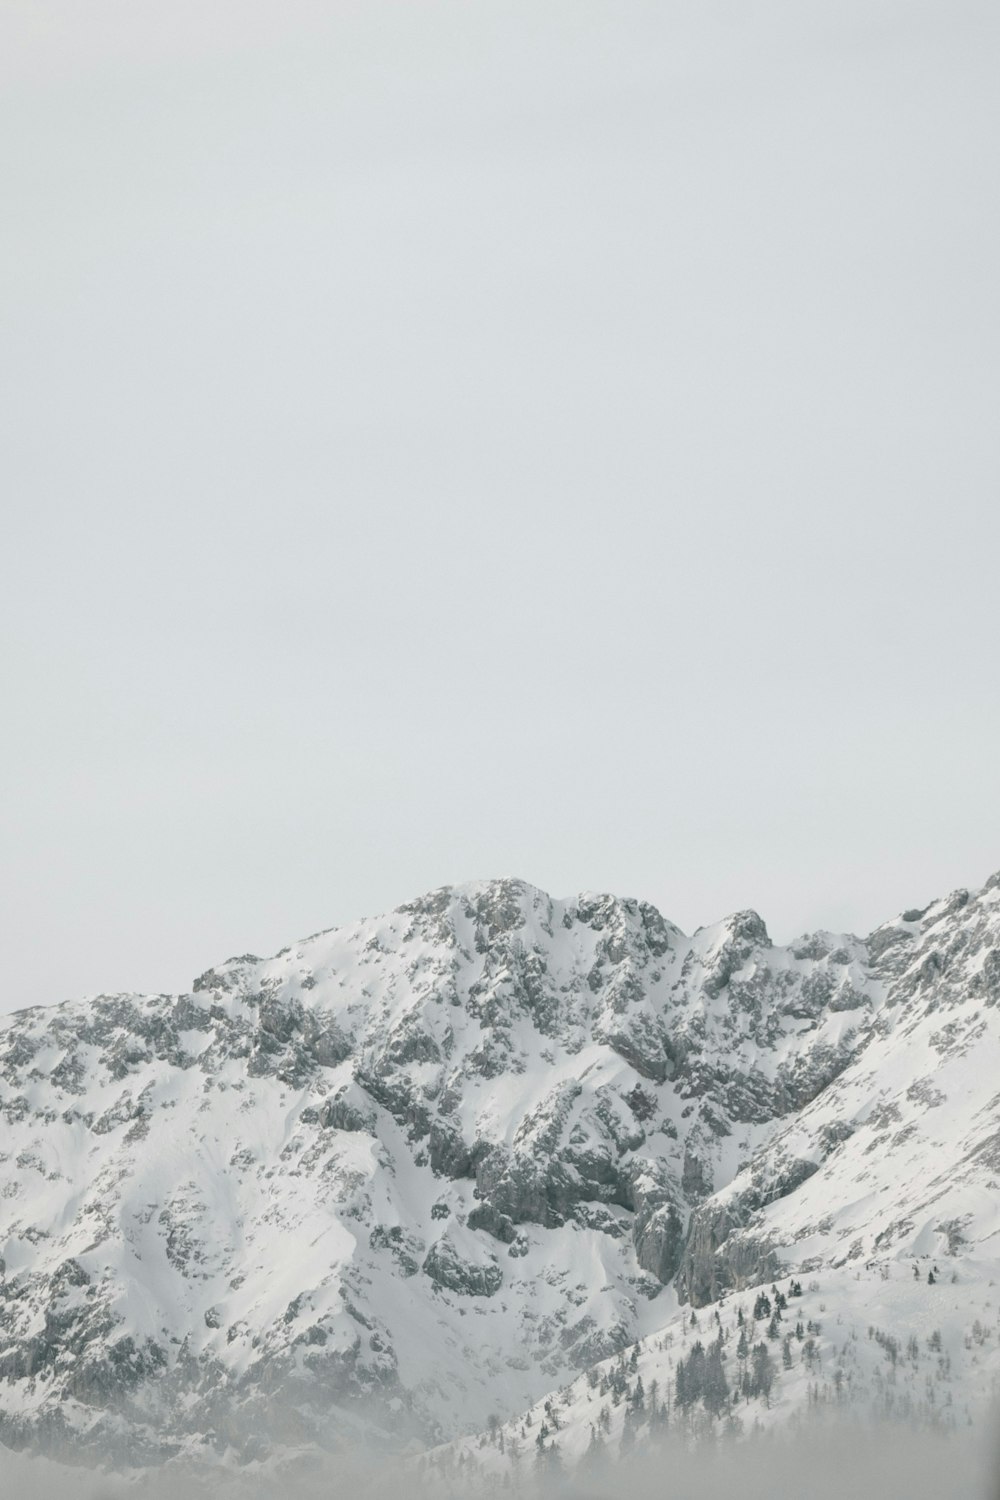 Una montaña cubierta de nieve con un cielo de fondo